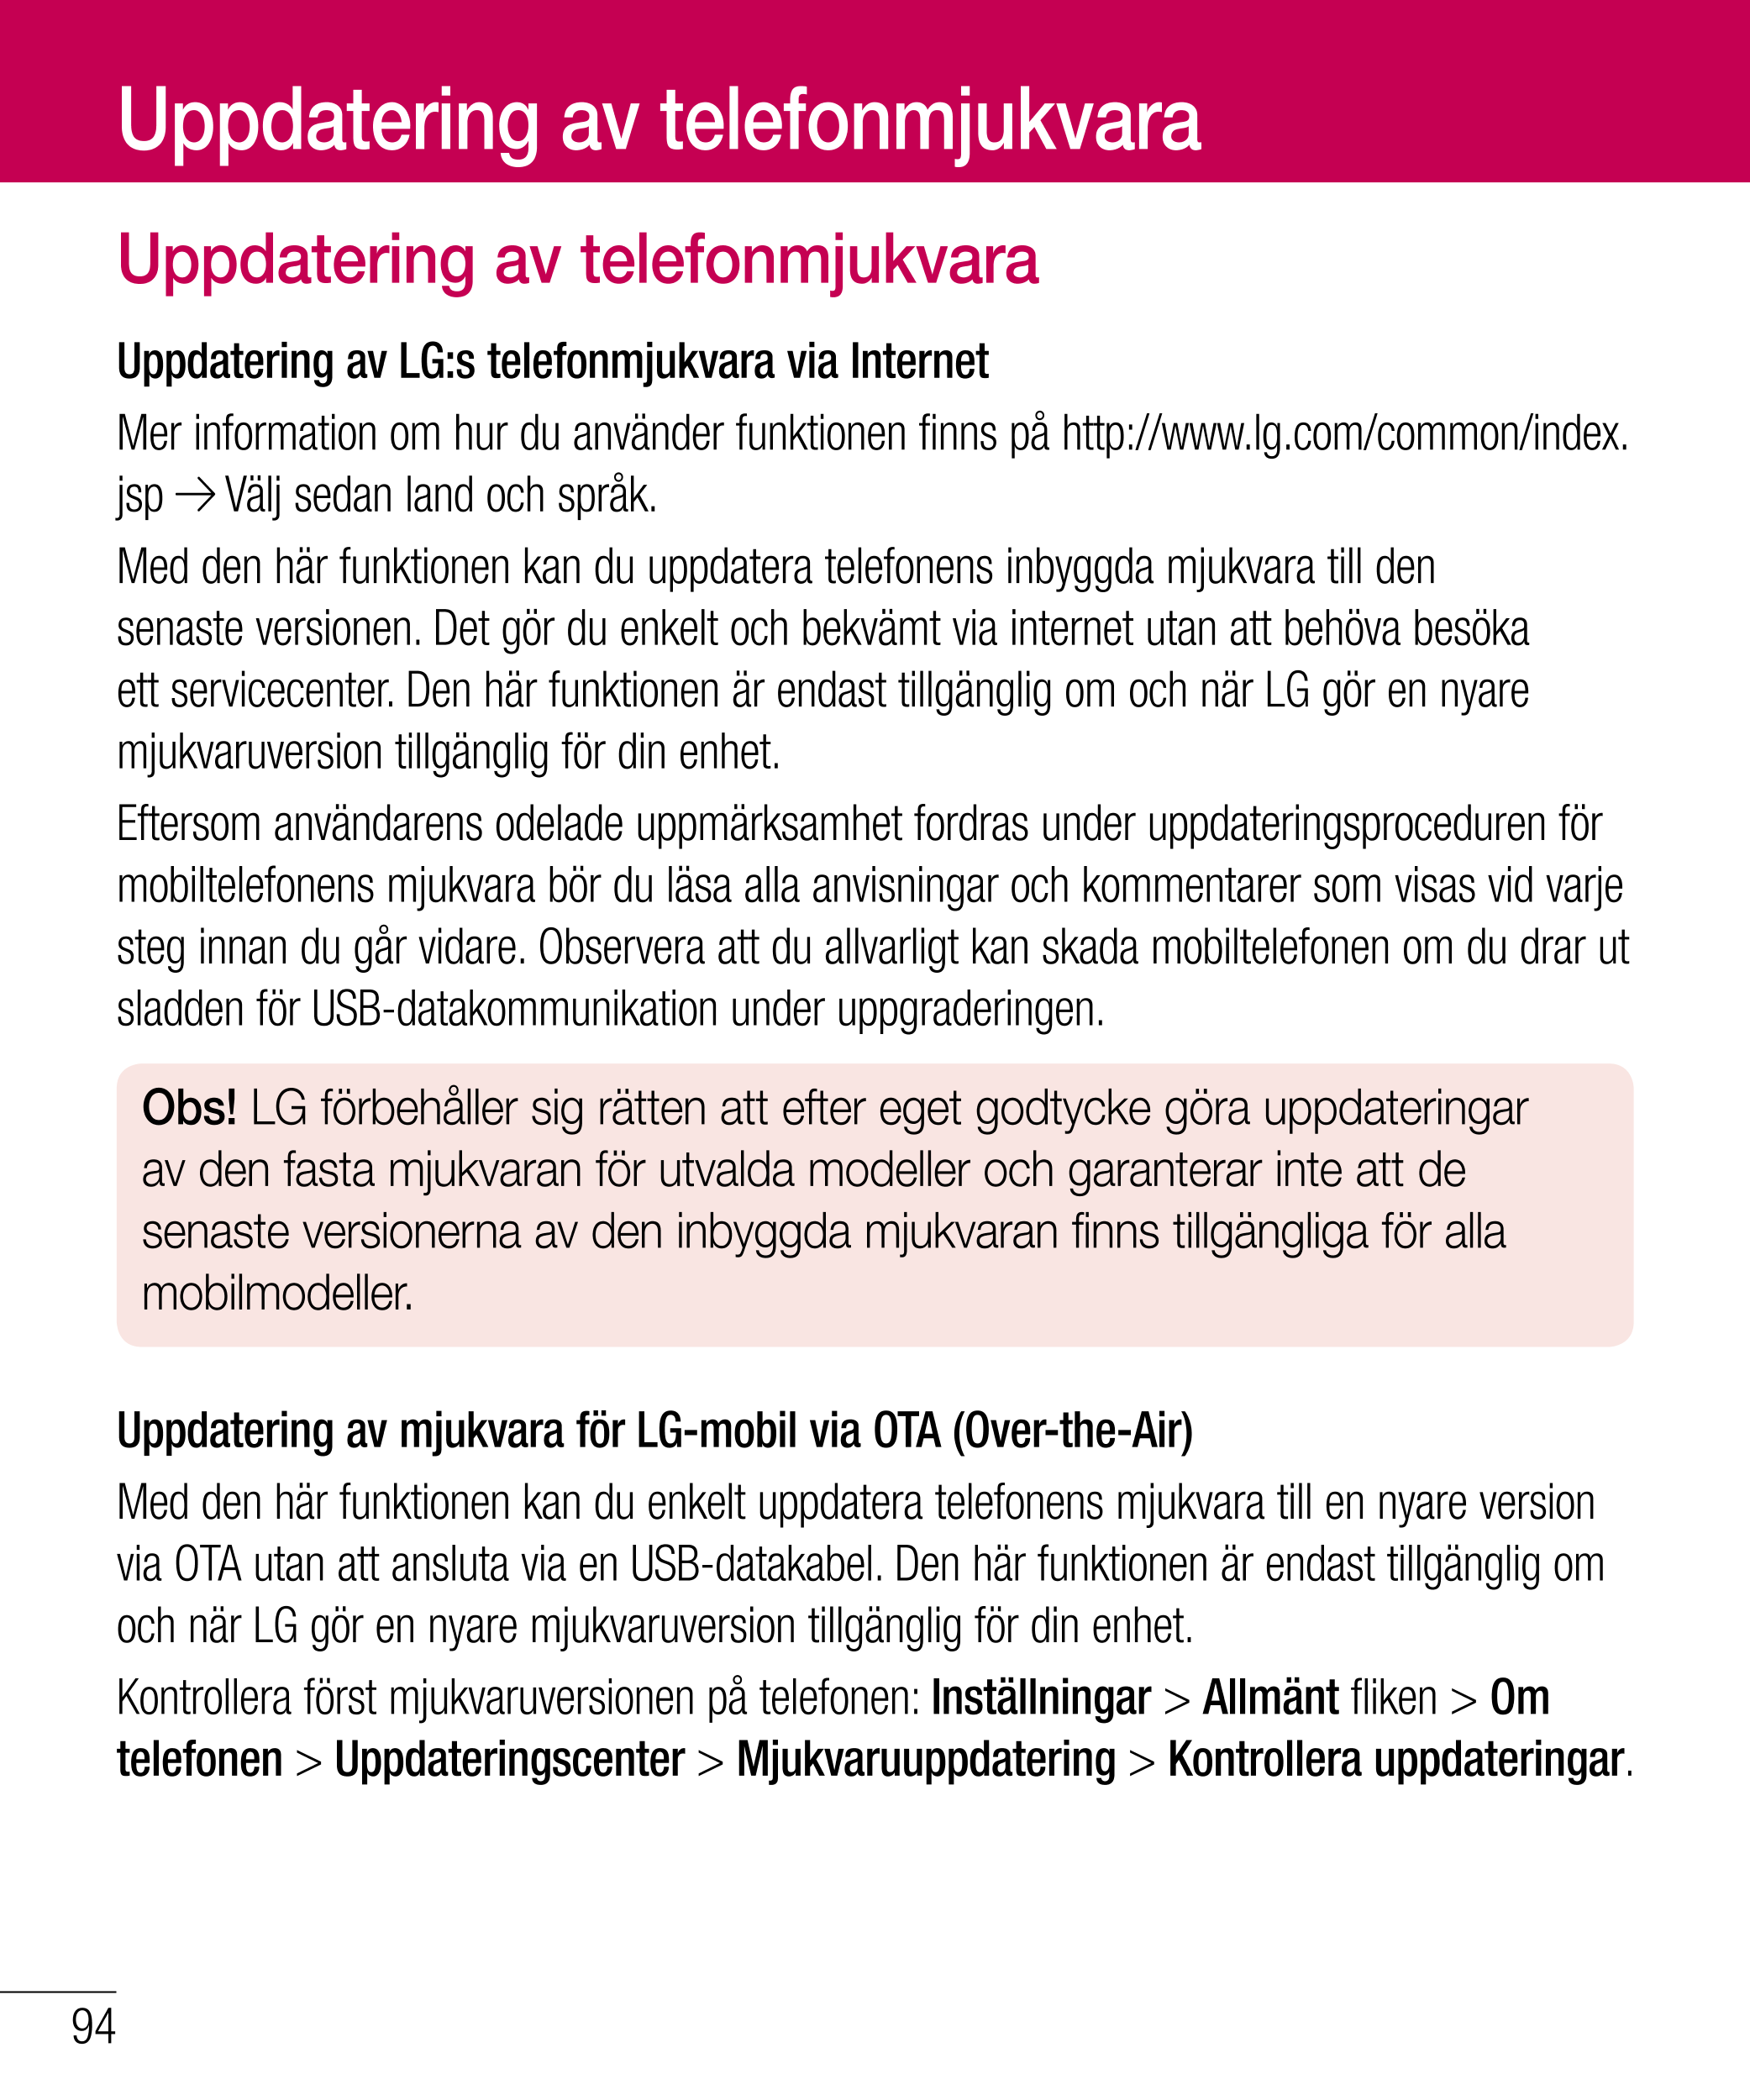 Uppdatering av telefonmjukvara
Uppdatering av telefonmjukvara
Uppdatering av LG:s telefonmjukvara via Internet
Mer information o